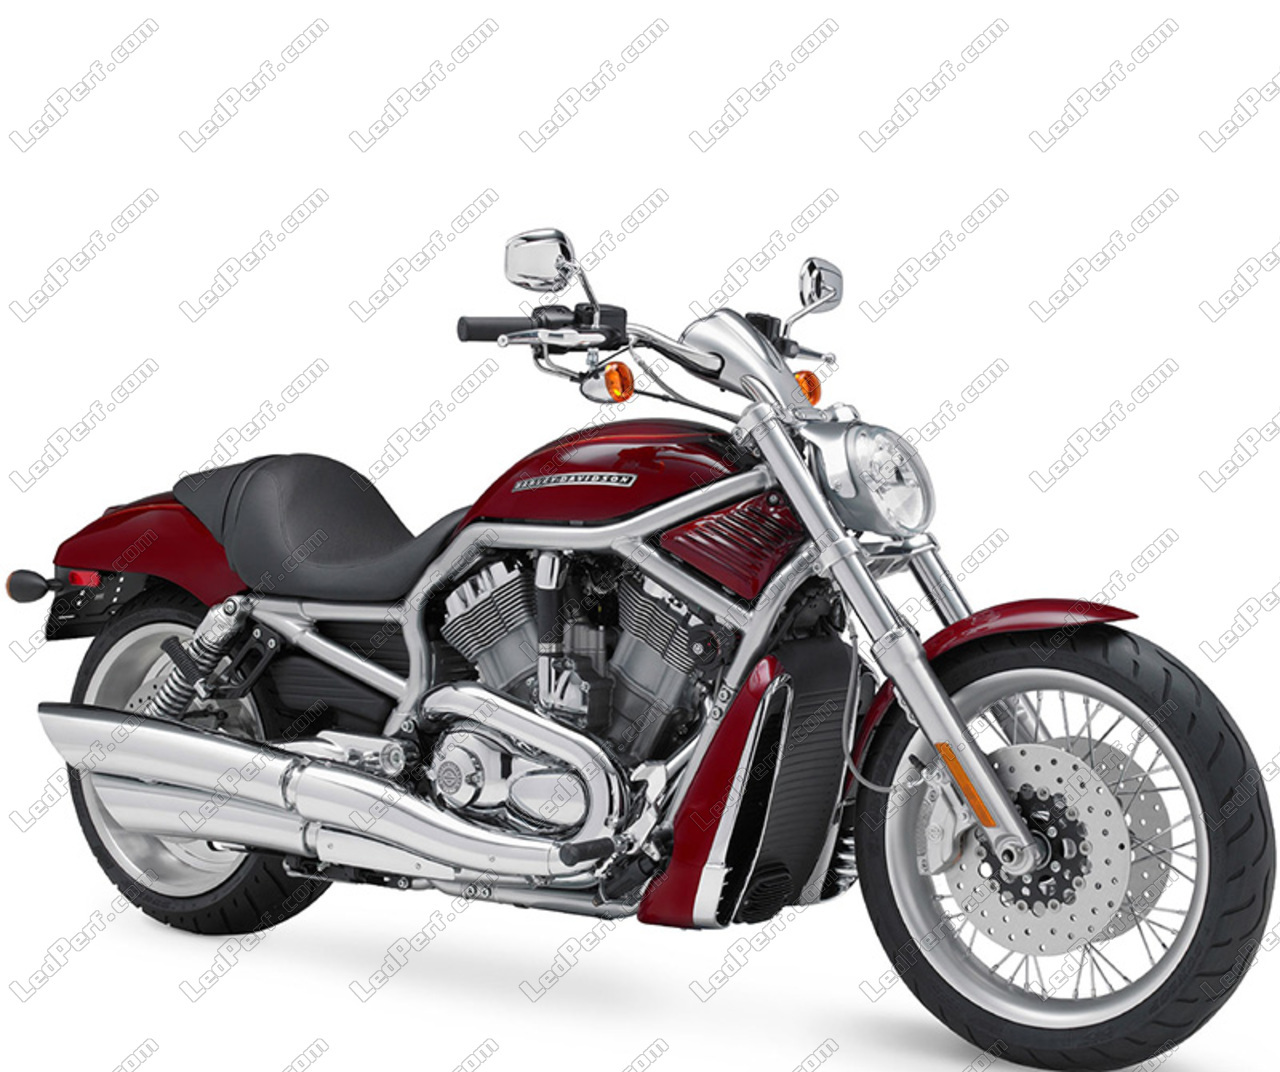 Hid Xenon Kit 35 W Oder 55 W Fur Harley Davidson V Rod 1130 1250 Lebenslange Garantie Und Versandkostenfreie Lieferung